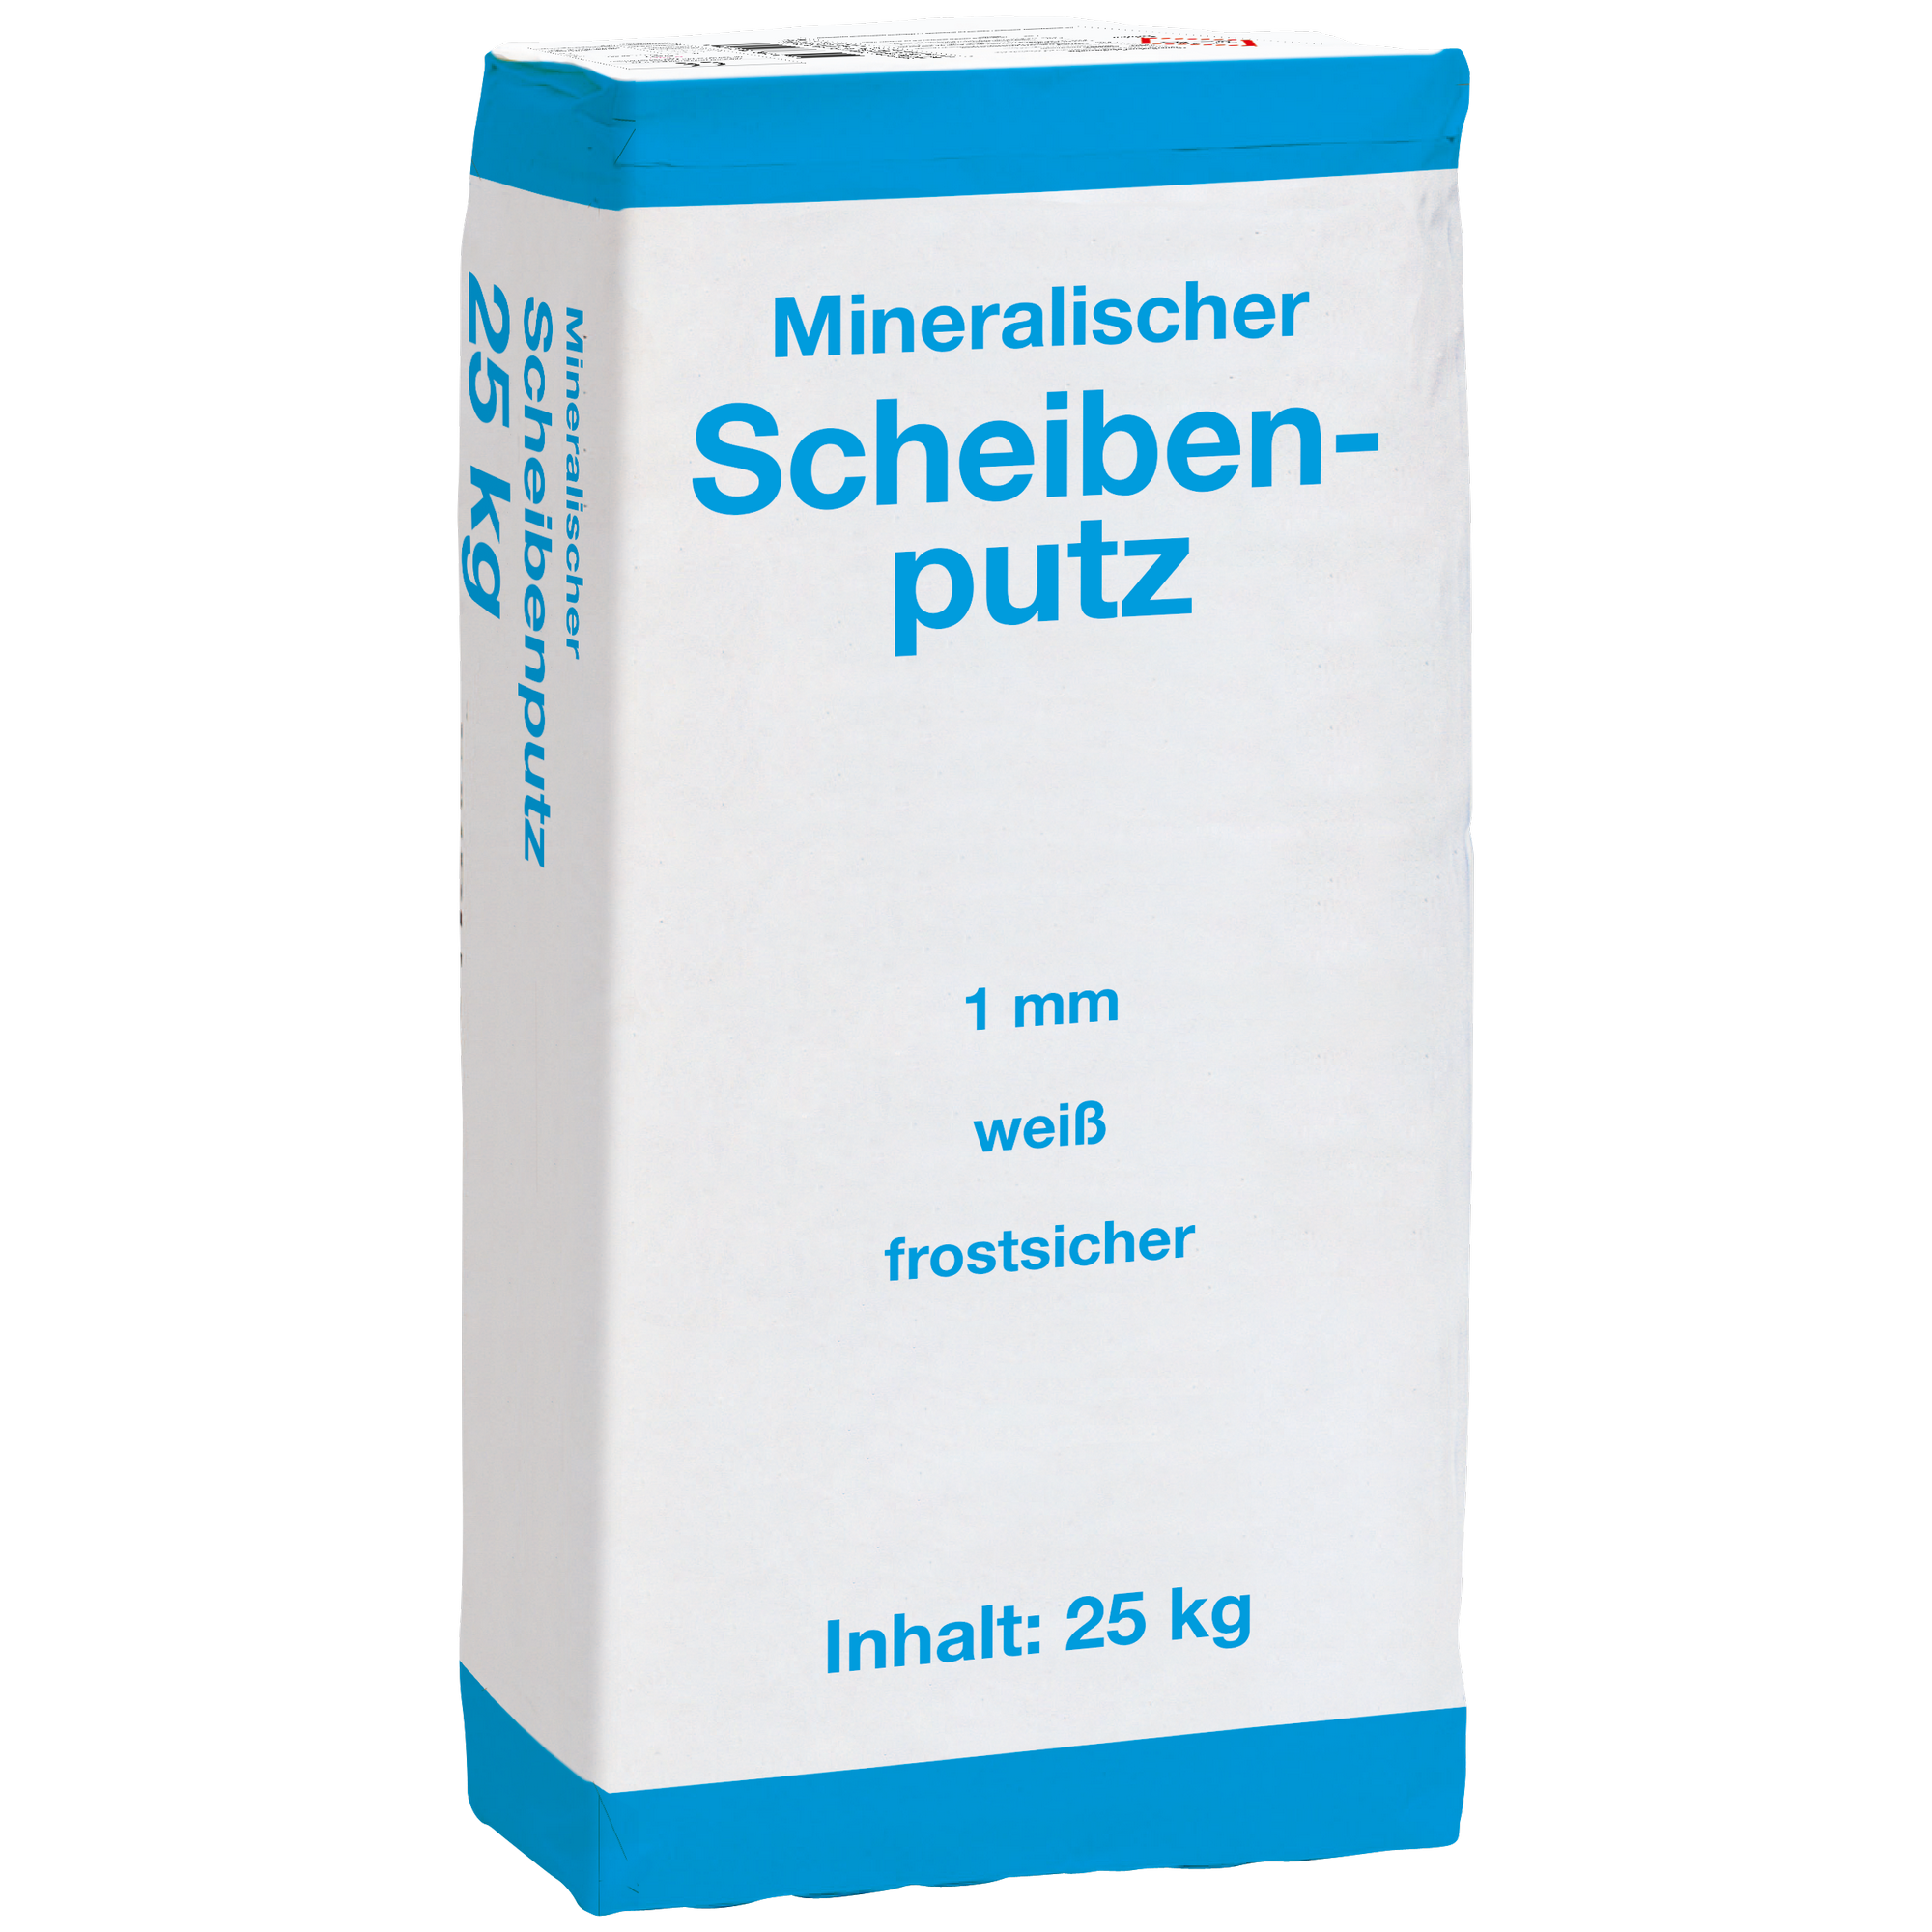 Münchner Scheibenputz 25 kg + product picture